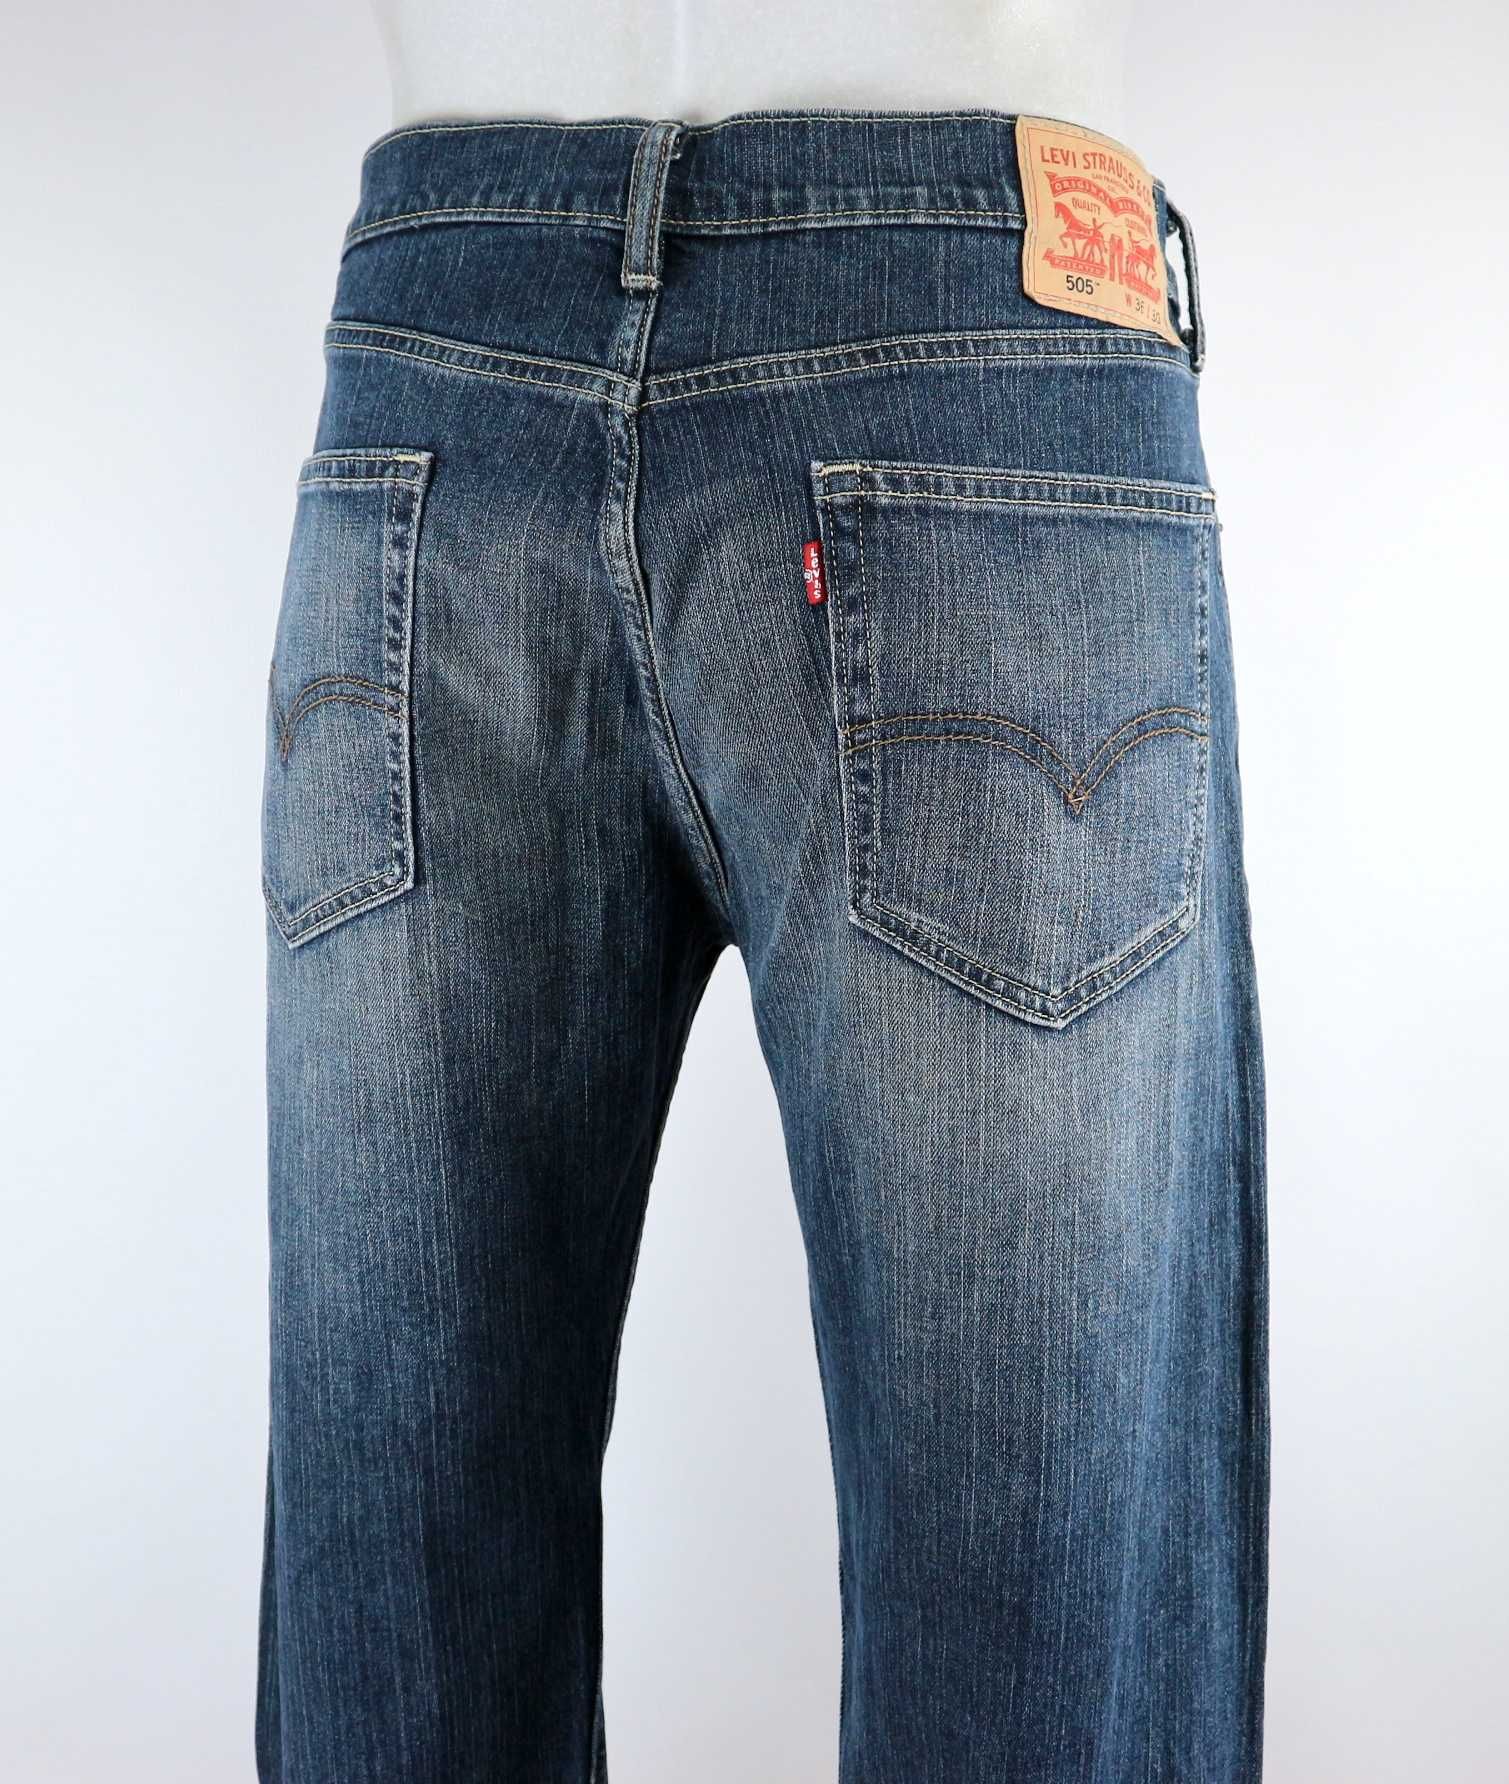 Levis 505 spodnie jeansy W36 L30 pas 2 x 48 cm